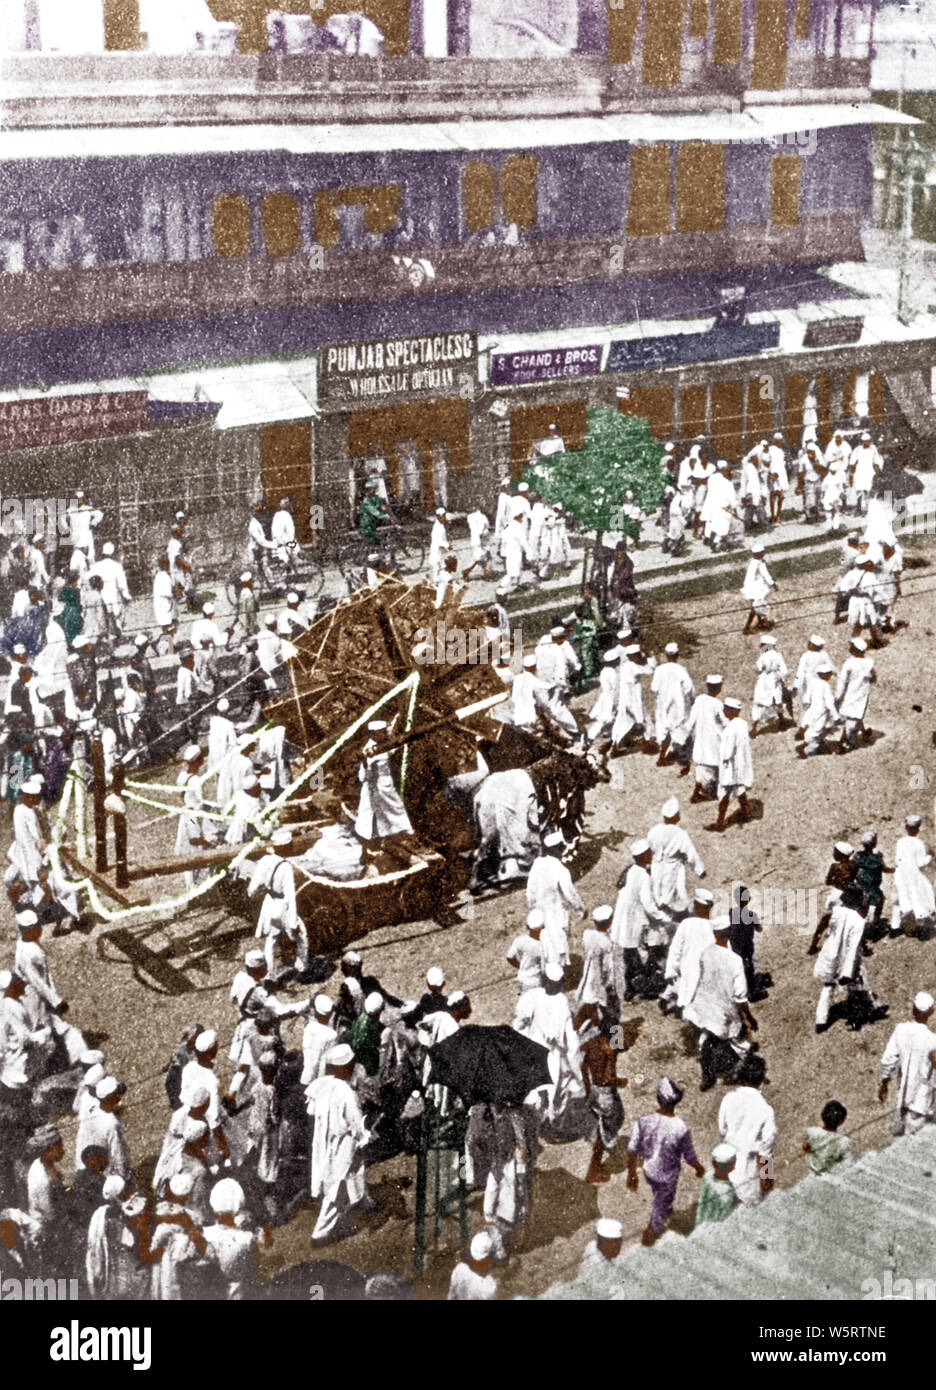 Processione con la ruota che gira grande movimento Khilafat, India, Asia, 26 luglio 1922, immagine vecchia annata 1900s Foto Stock